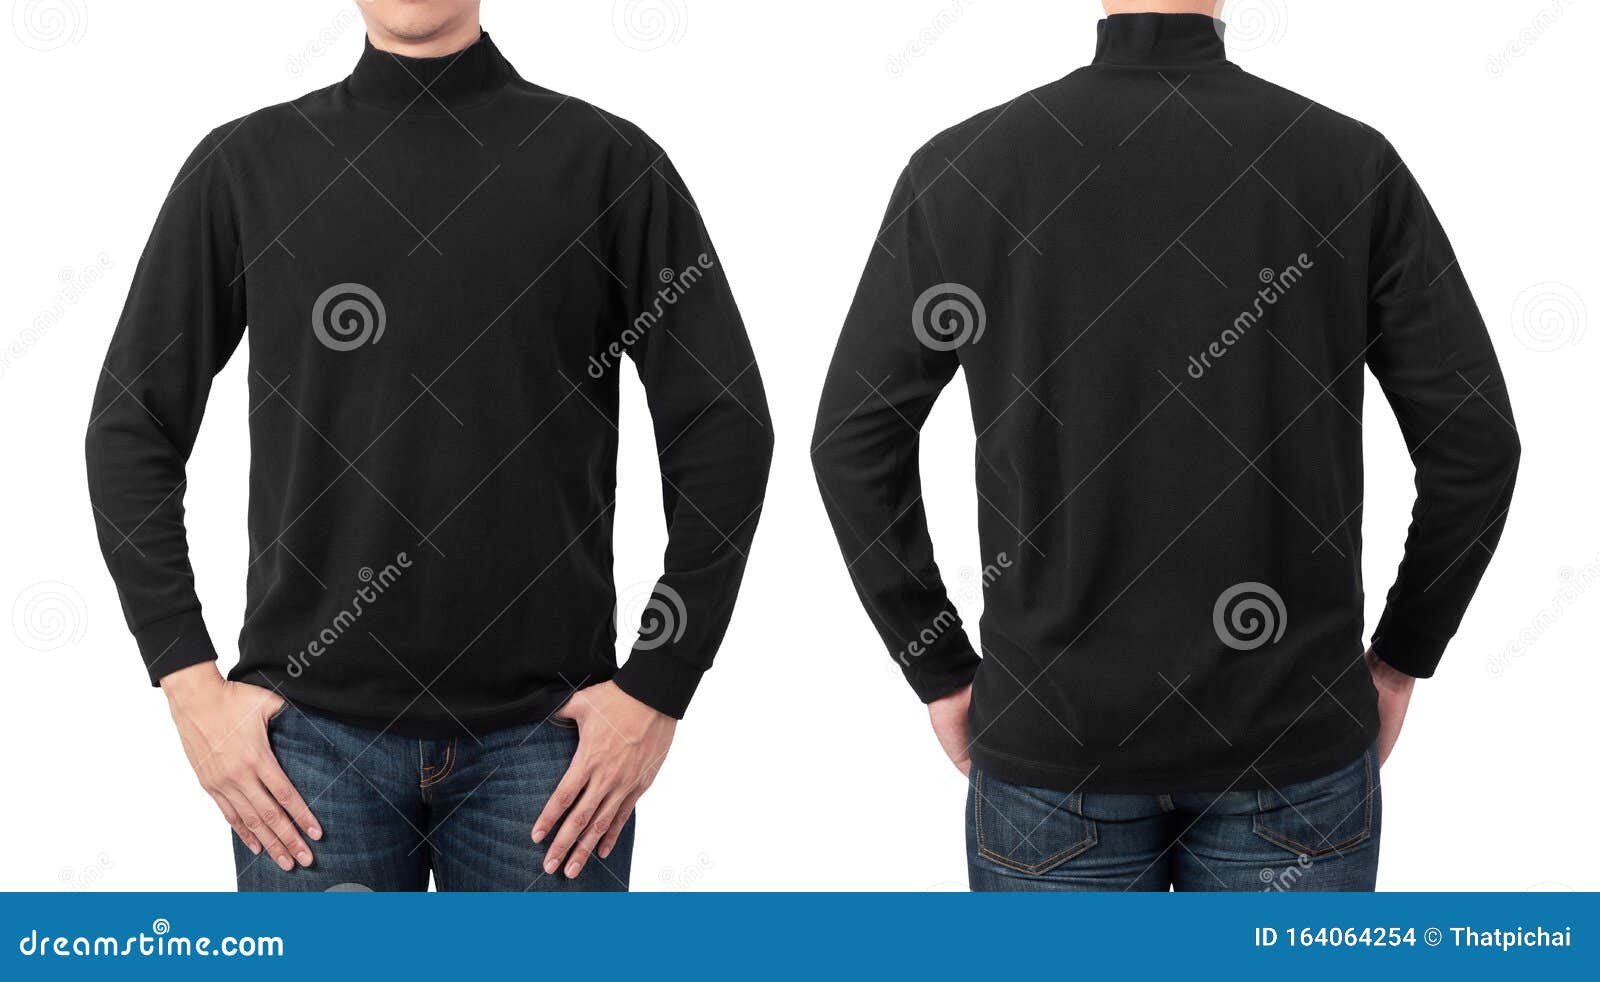 Download Male Model Wear Plain Black Long Sleeve T-shirt Mockup ...